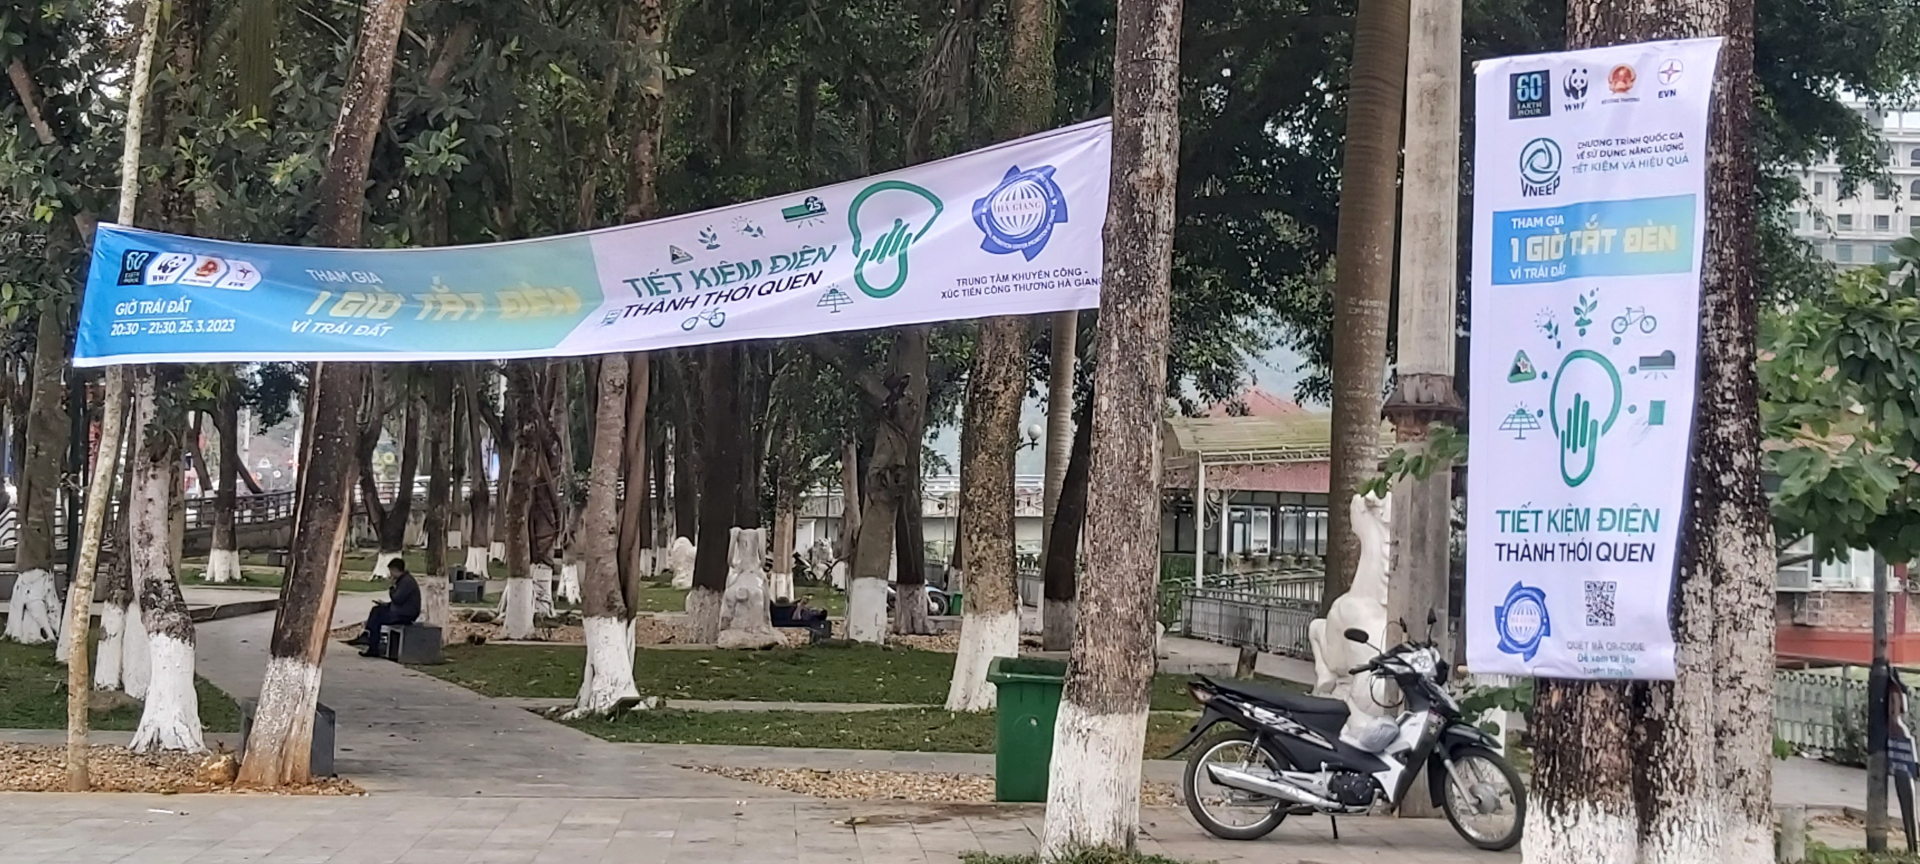 Băng rôn tuyên truyền hưởng ứng Chiến dịch Giờ trái đất năm 2023 tại Quảng trường 26.3, thành phố Hà Giang.